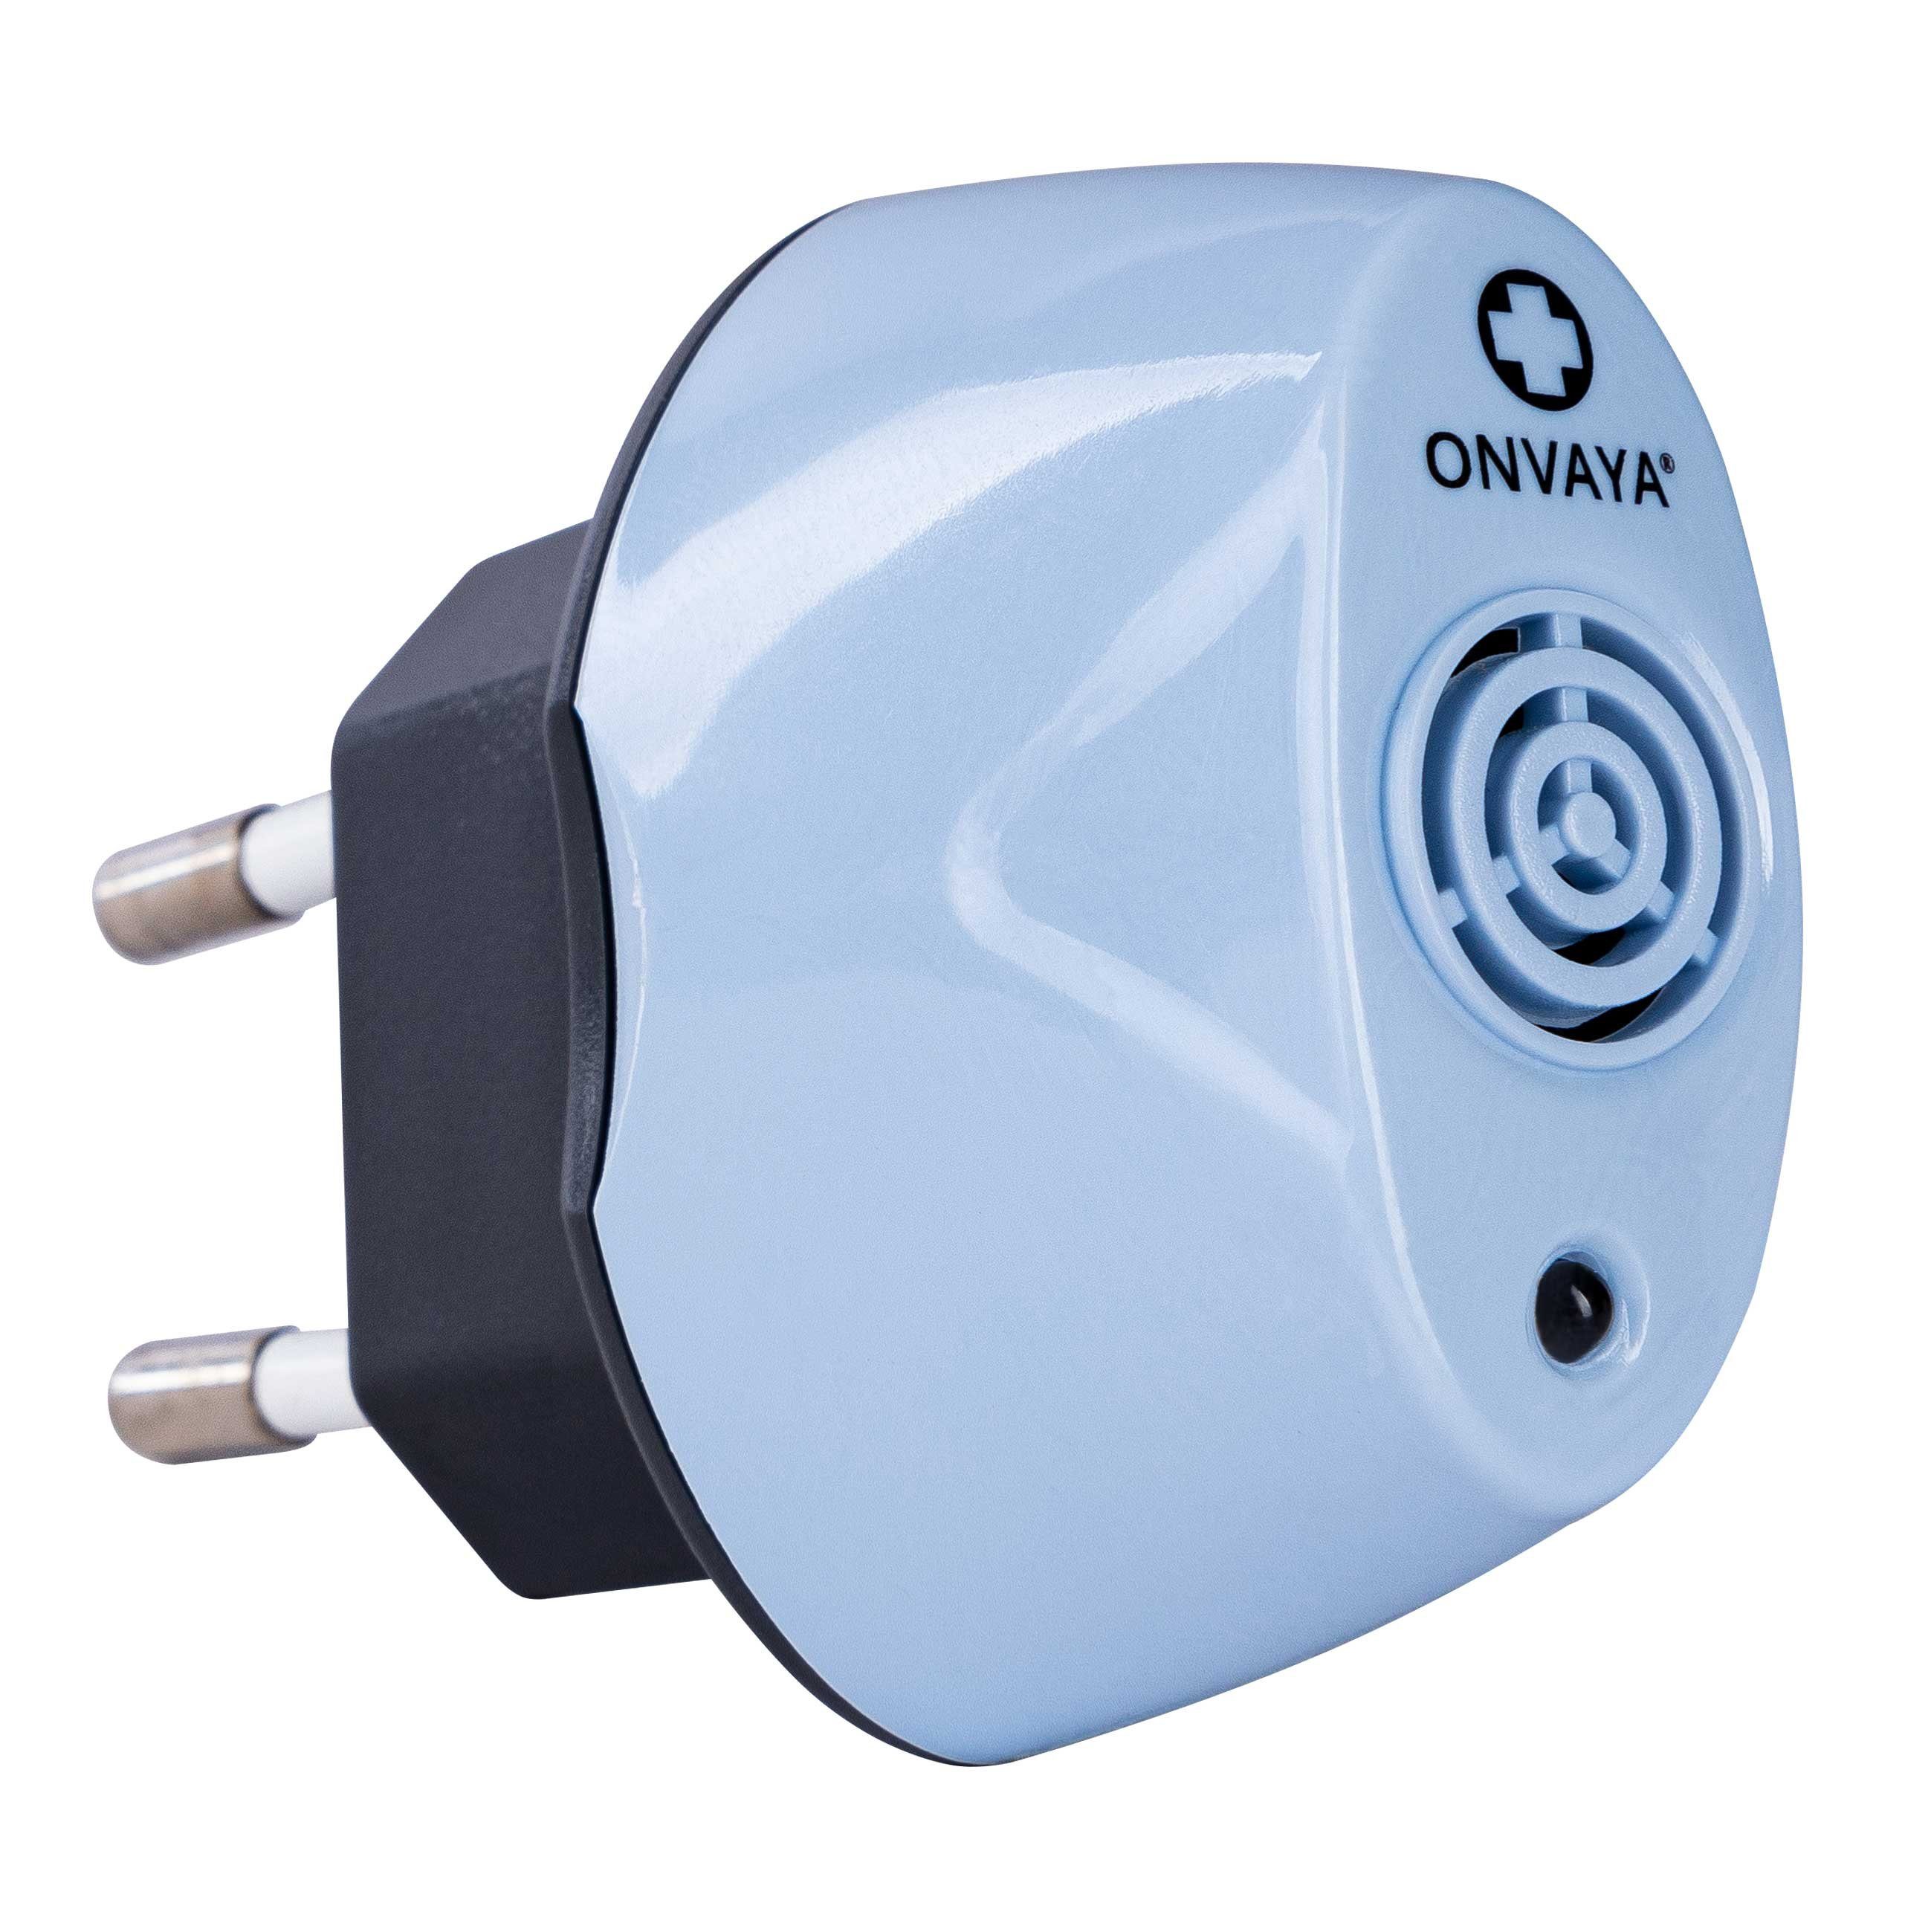 ONVAYA Ultraschall-Milbencontroller Ultraschall Milbencontroller, Mittel gegen Milben, ohne Chemie 1er Set - Blau